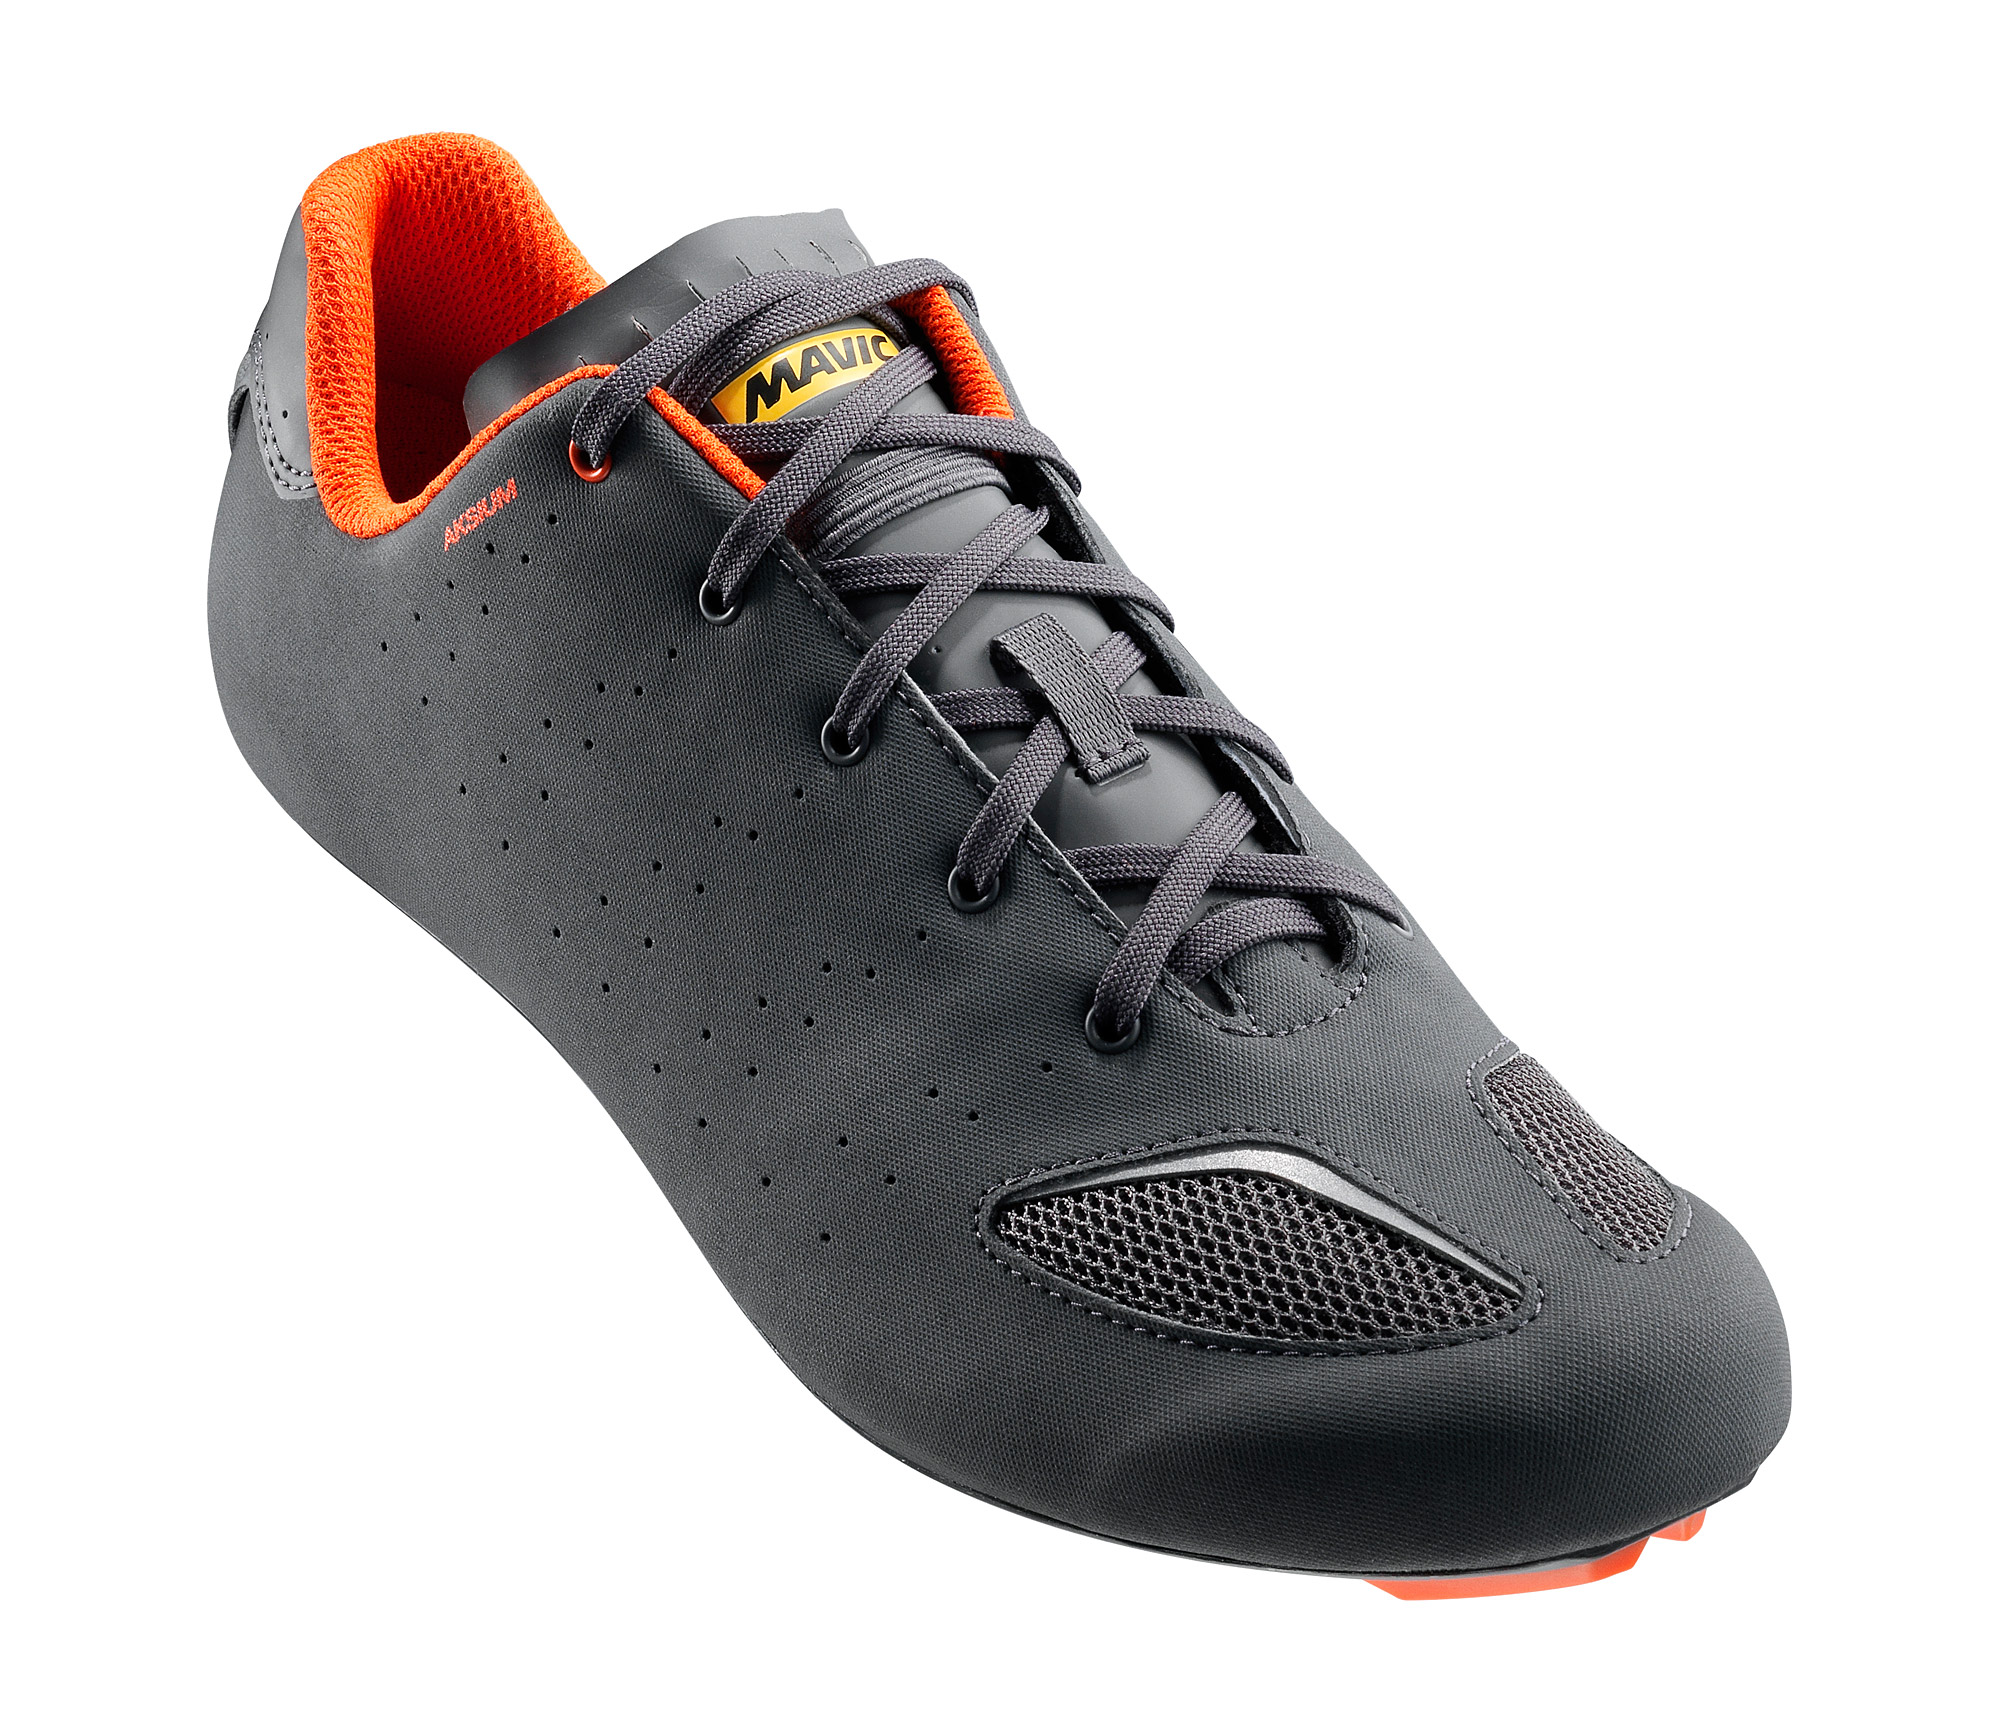 Обувь Mavic AKSIUM III, размер UK 7 (40 2/3, 257мм) Asphalt/Orange серо-оранжевая фото 